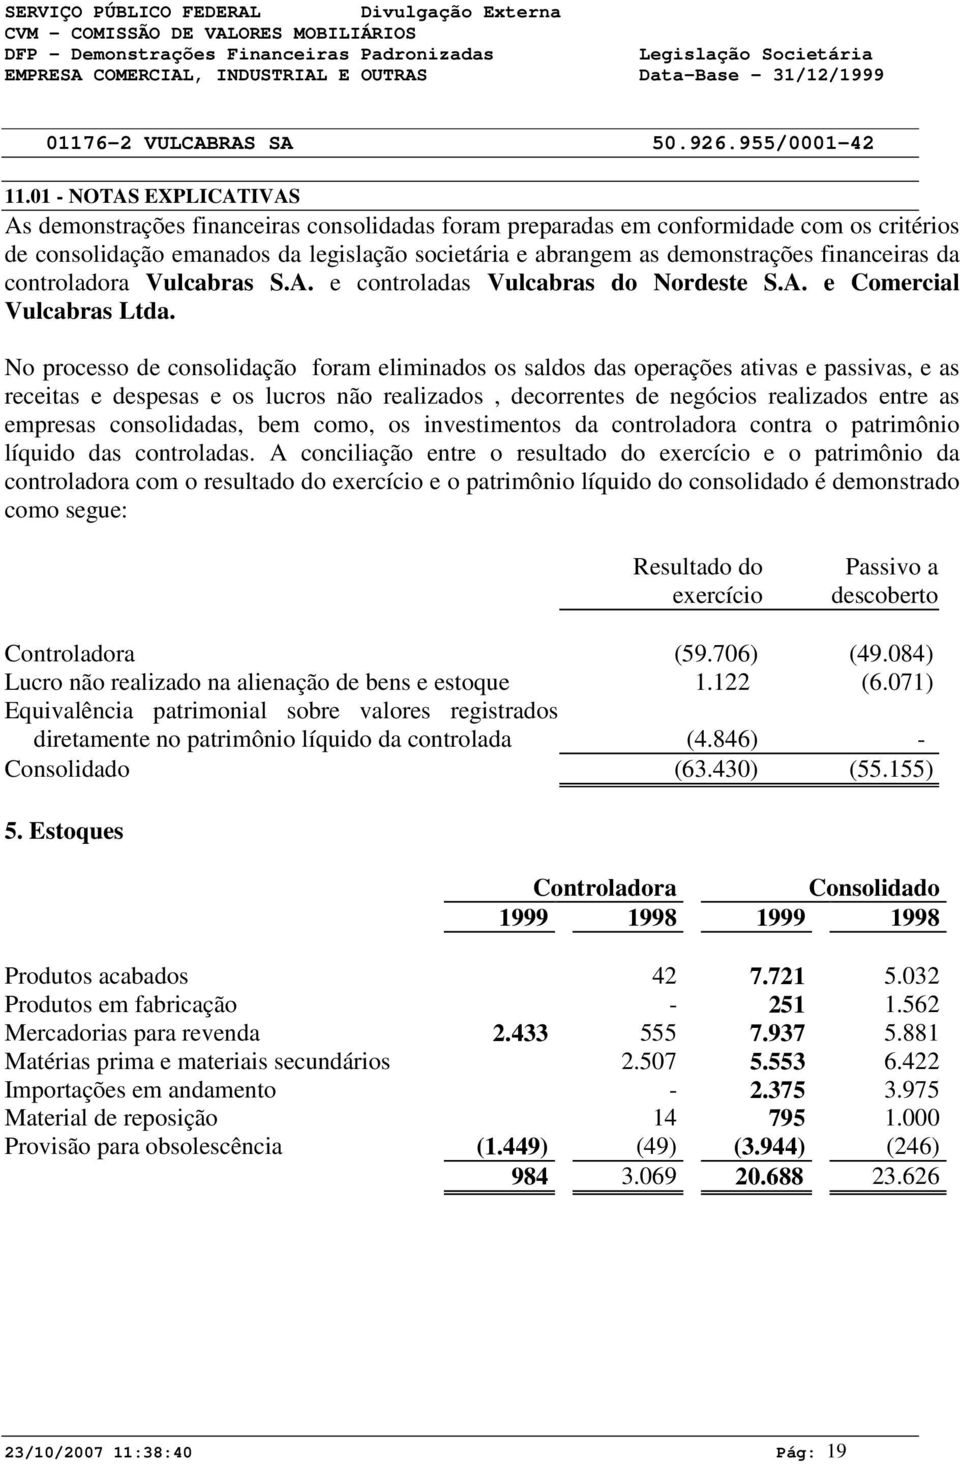 financeiras da controladora Vulcabras S.A. e controladas Vulcabras do Nordeste S.A. e Comercial Vulcabras Ltda.